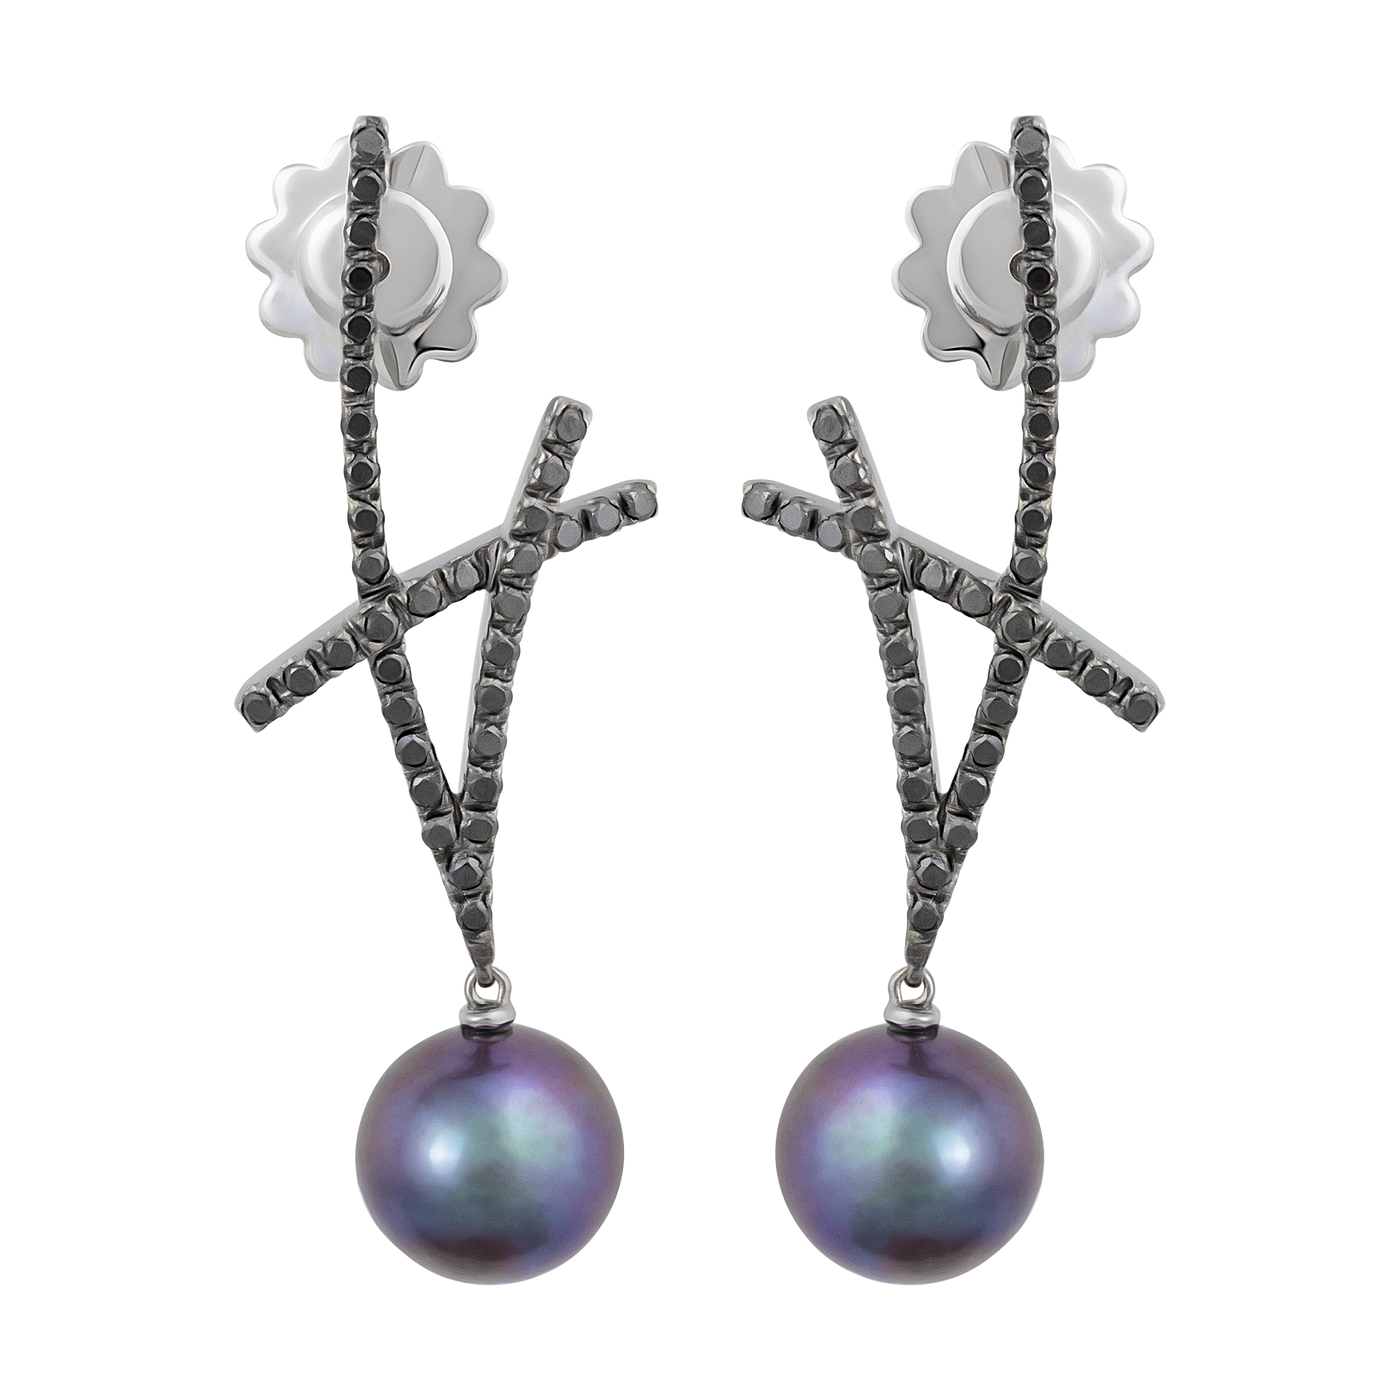 Stefan Hafner 18K Black Rhodium Diamond & Pearl Earrings